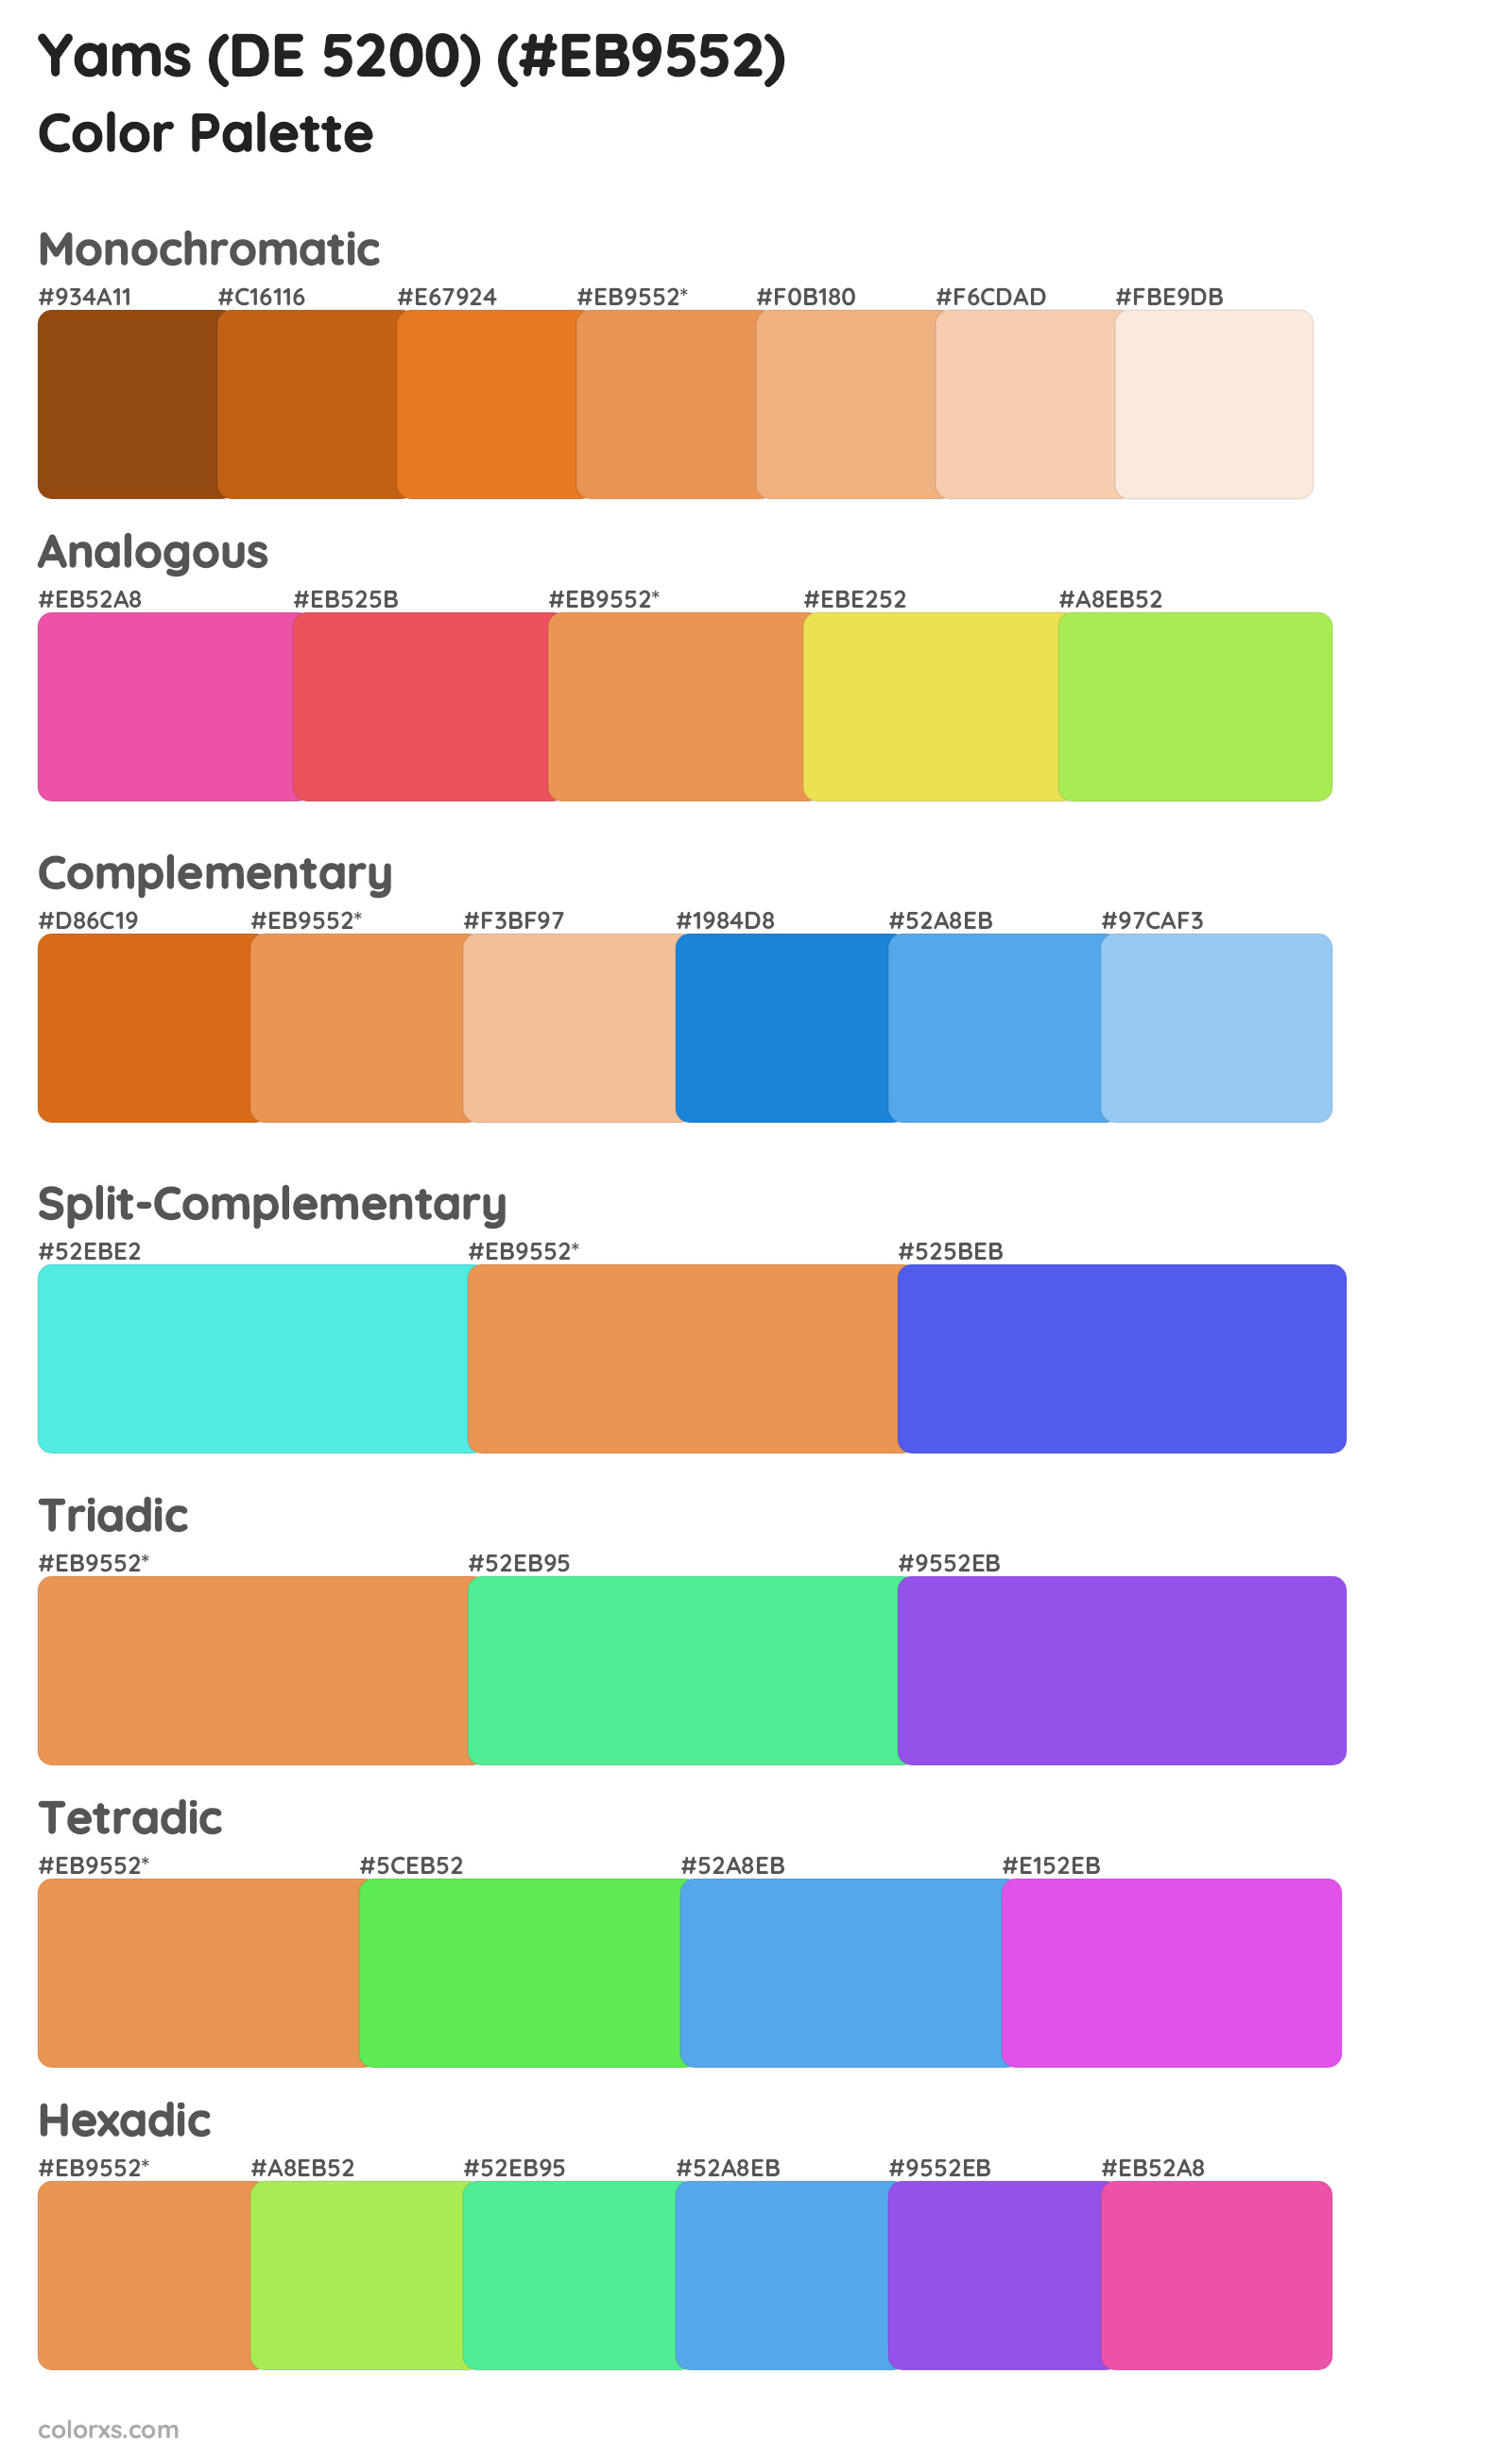 Yams (DE 5200) Color Scheme Palettes